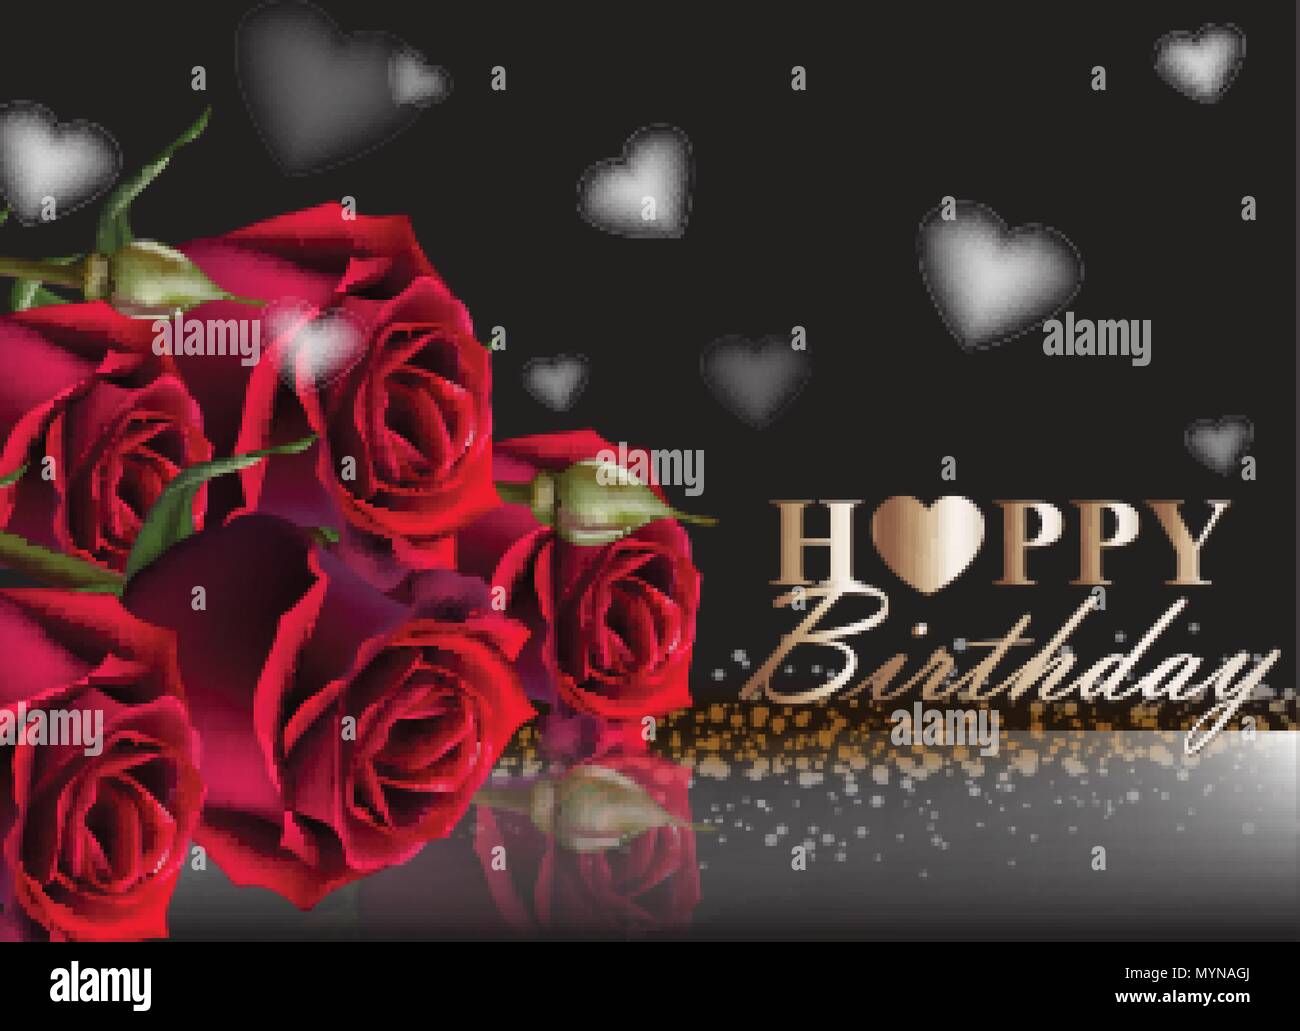 Herzlichen Glückwunsch zum Geburtstag rote Rosen Hintergrund Vektor.  Vintage florales Dekor Schwarz Stock-Vektorgrafik - Alamy